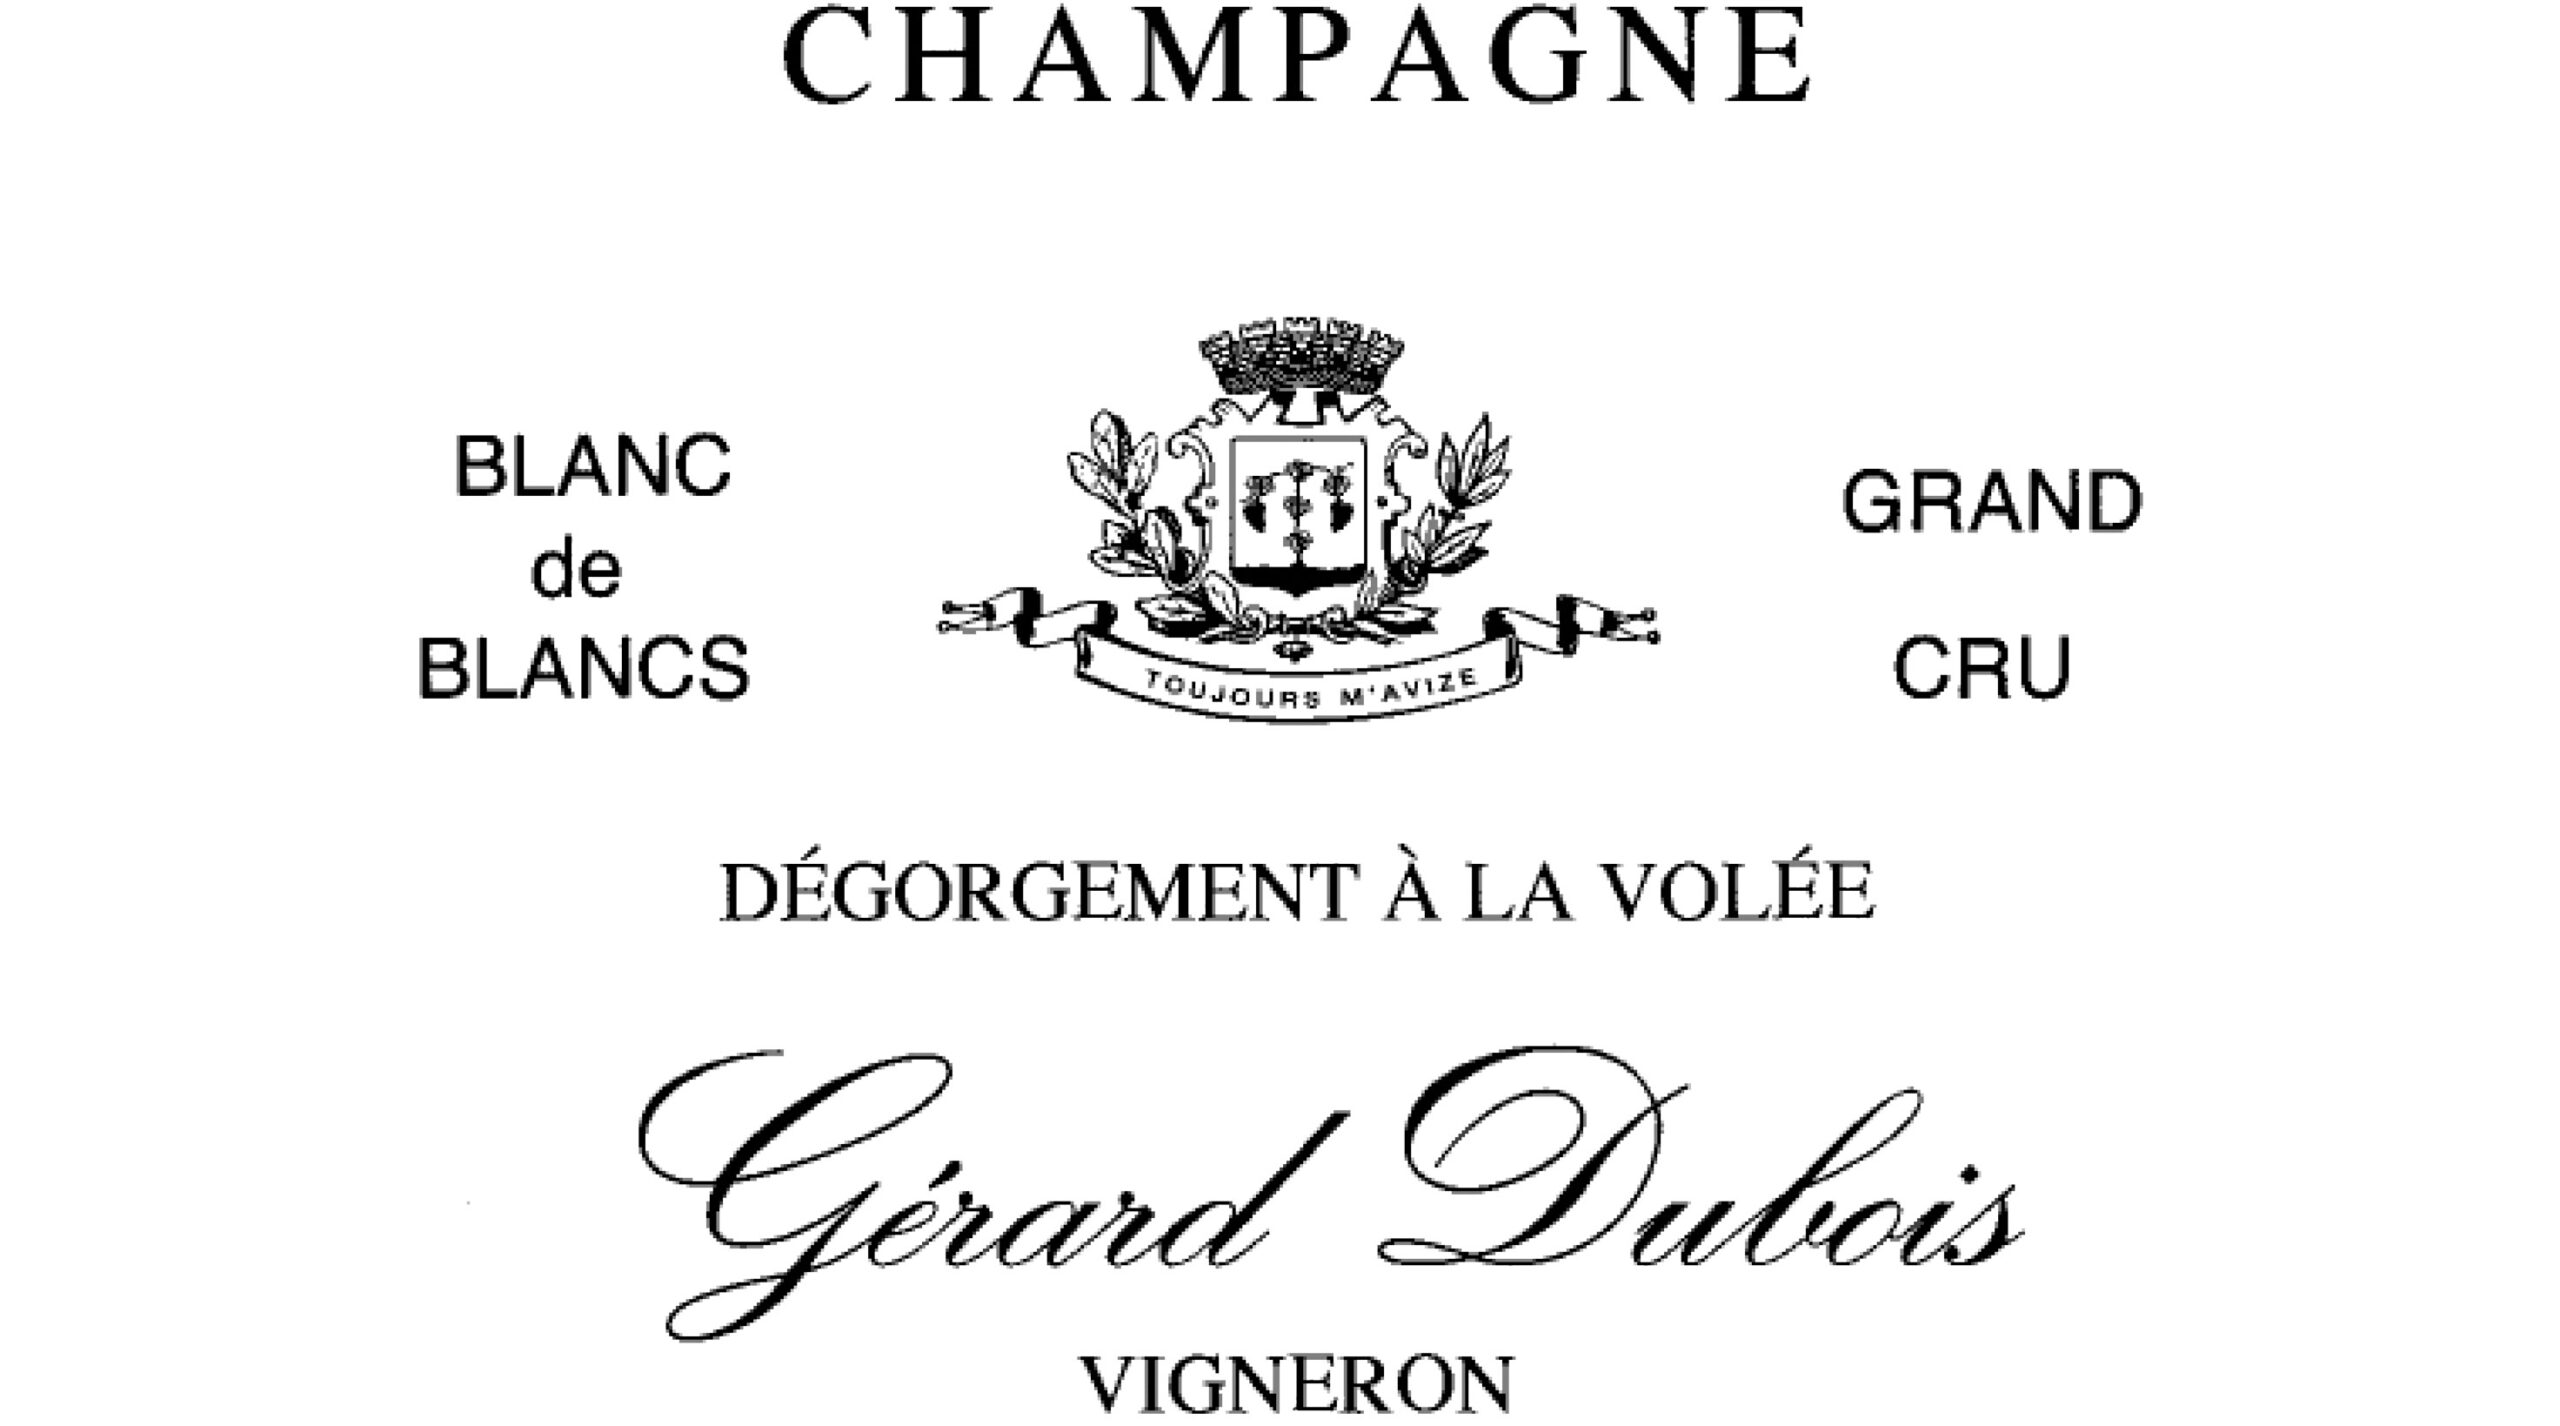 Champagne Gérard Dubois